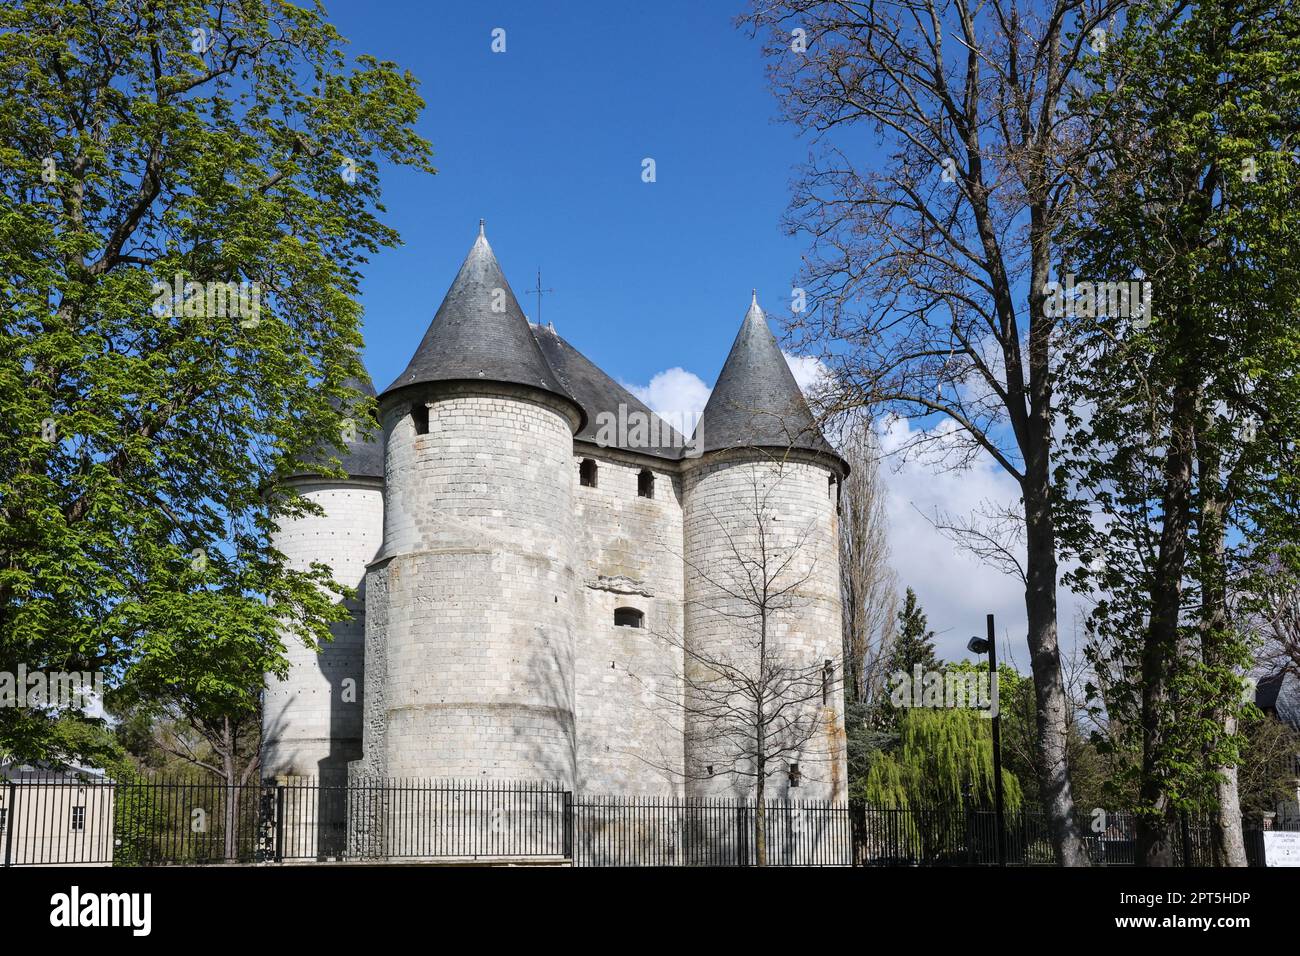 Château des Tourelles, EL castillo de TOURELLES El castillo de Tourelles (torretas) fue construido en 1196 por Philippe Augustus. Era una cabeza de puente destinada a defender la ciudad de Vernon situada en la frontera de las tierras de la corona y el ducado de Normandía. Este bastión consta de cuatro torres y un castillo. Situado al lado, el antiguo molino de Vernon, el viejo puente del molino, el viejo puente del molino de Vernon, el, viejo, molino, puente, en, vernon, in, francia, sobre, el, río sena, Normandía, Normandía, noroeste de Francia, francés, Europa, europeo, Foto de stock